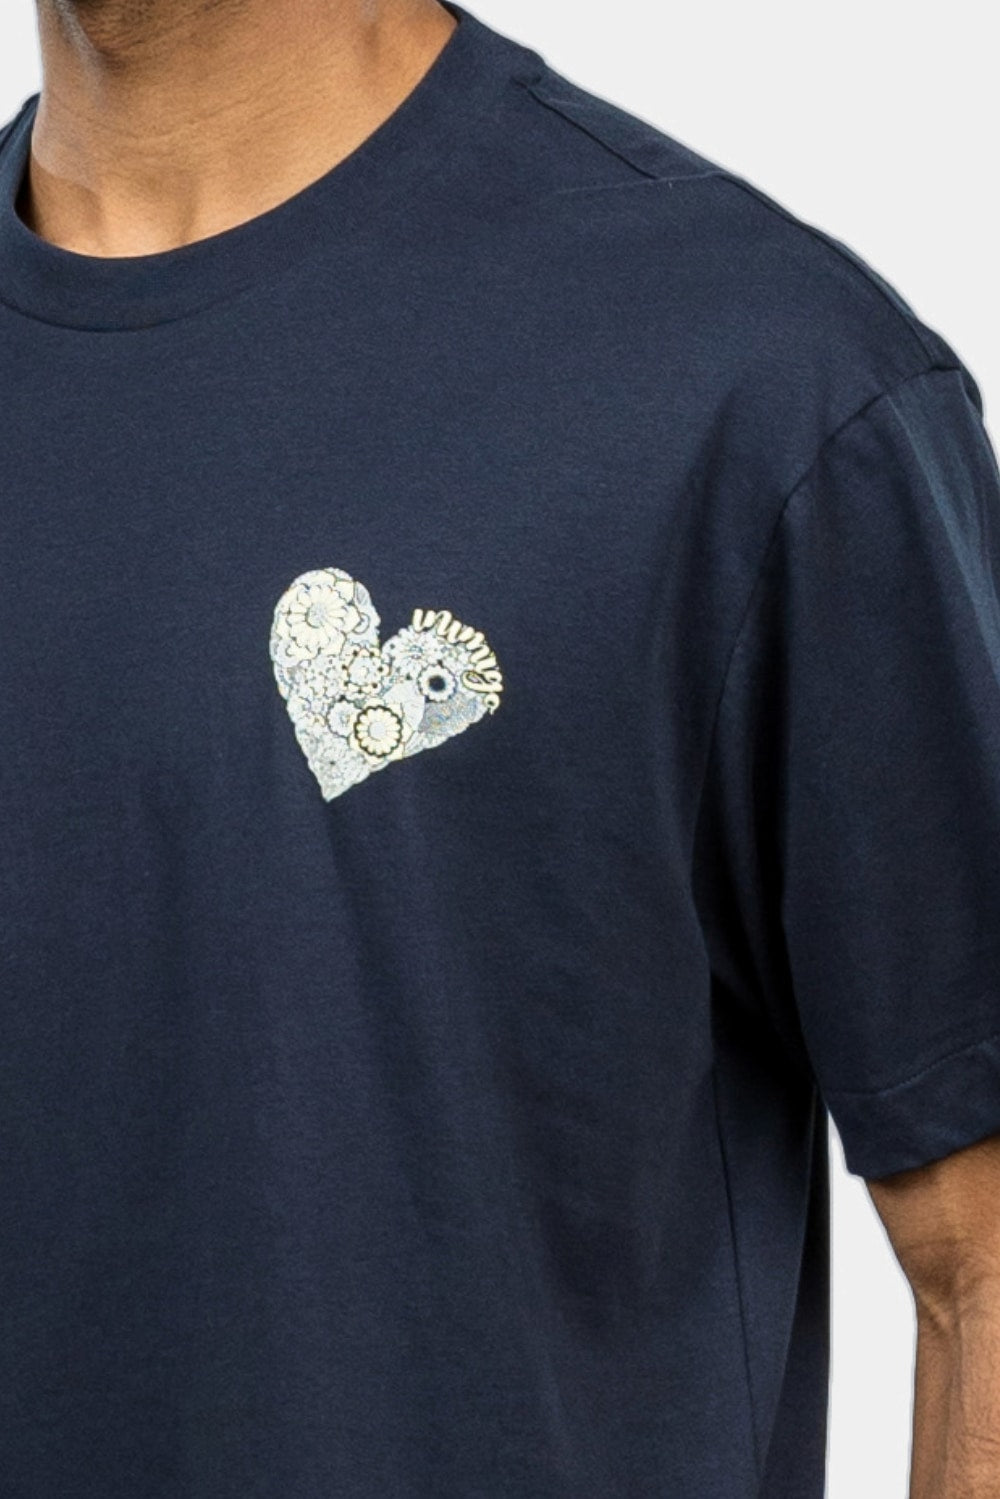 INIMIGO Retro Heart Comfort T-shirt